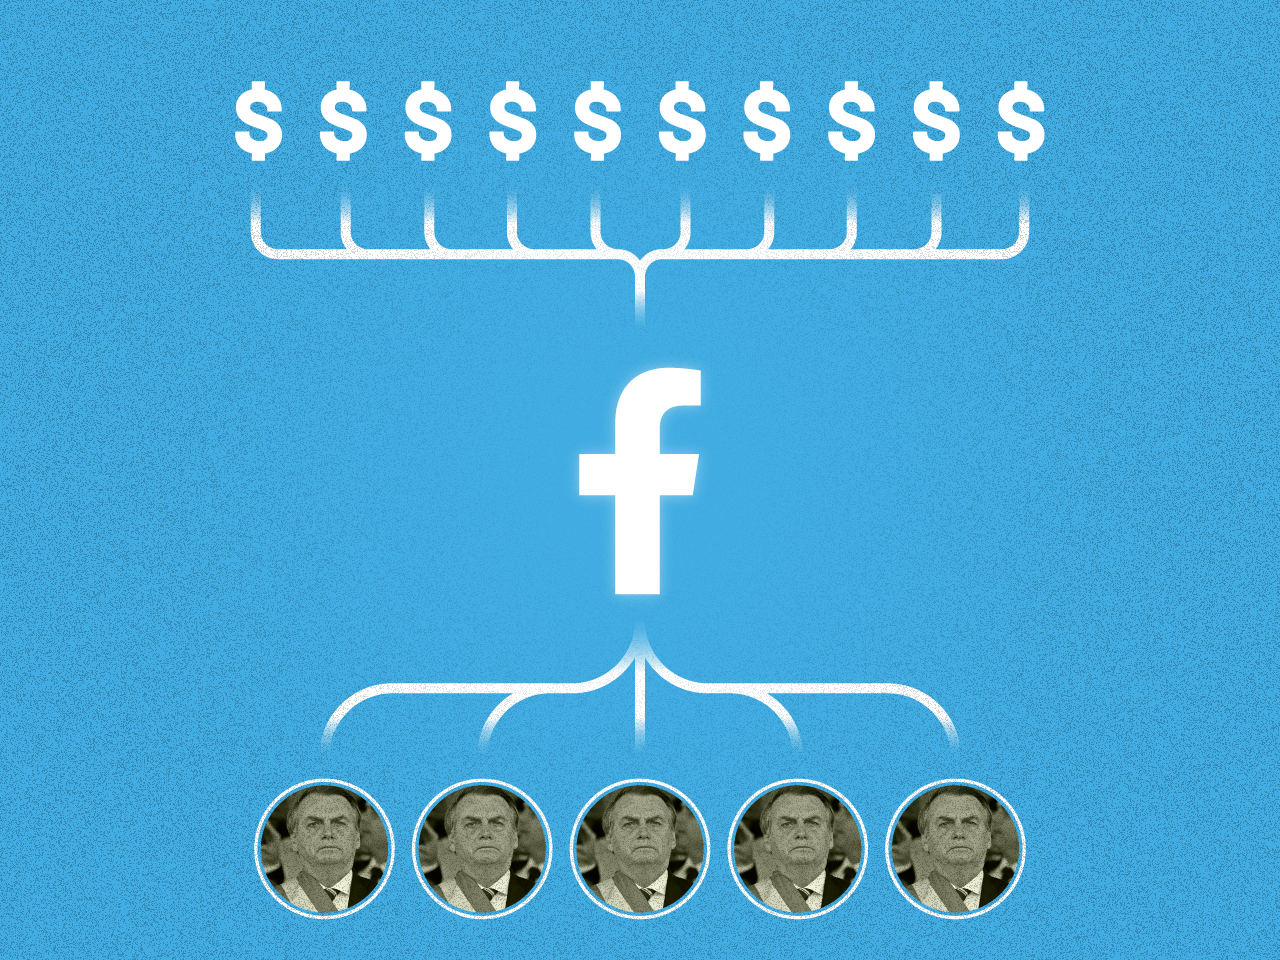 Página "Tia do Zap" promove anúncios irregulares pró-Bolsonaro no Facebook e no Instagram